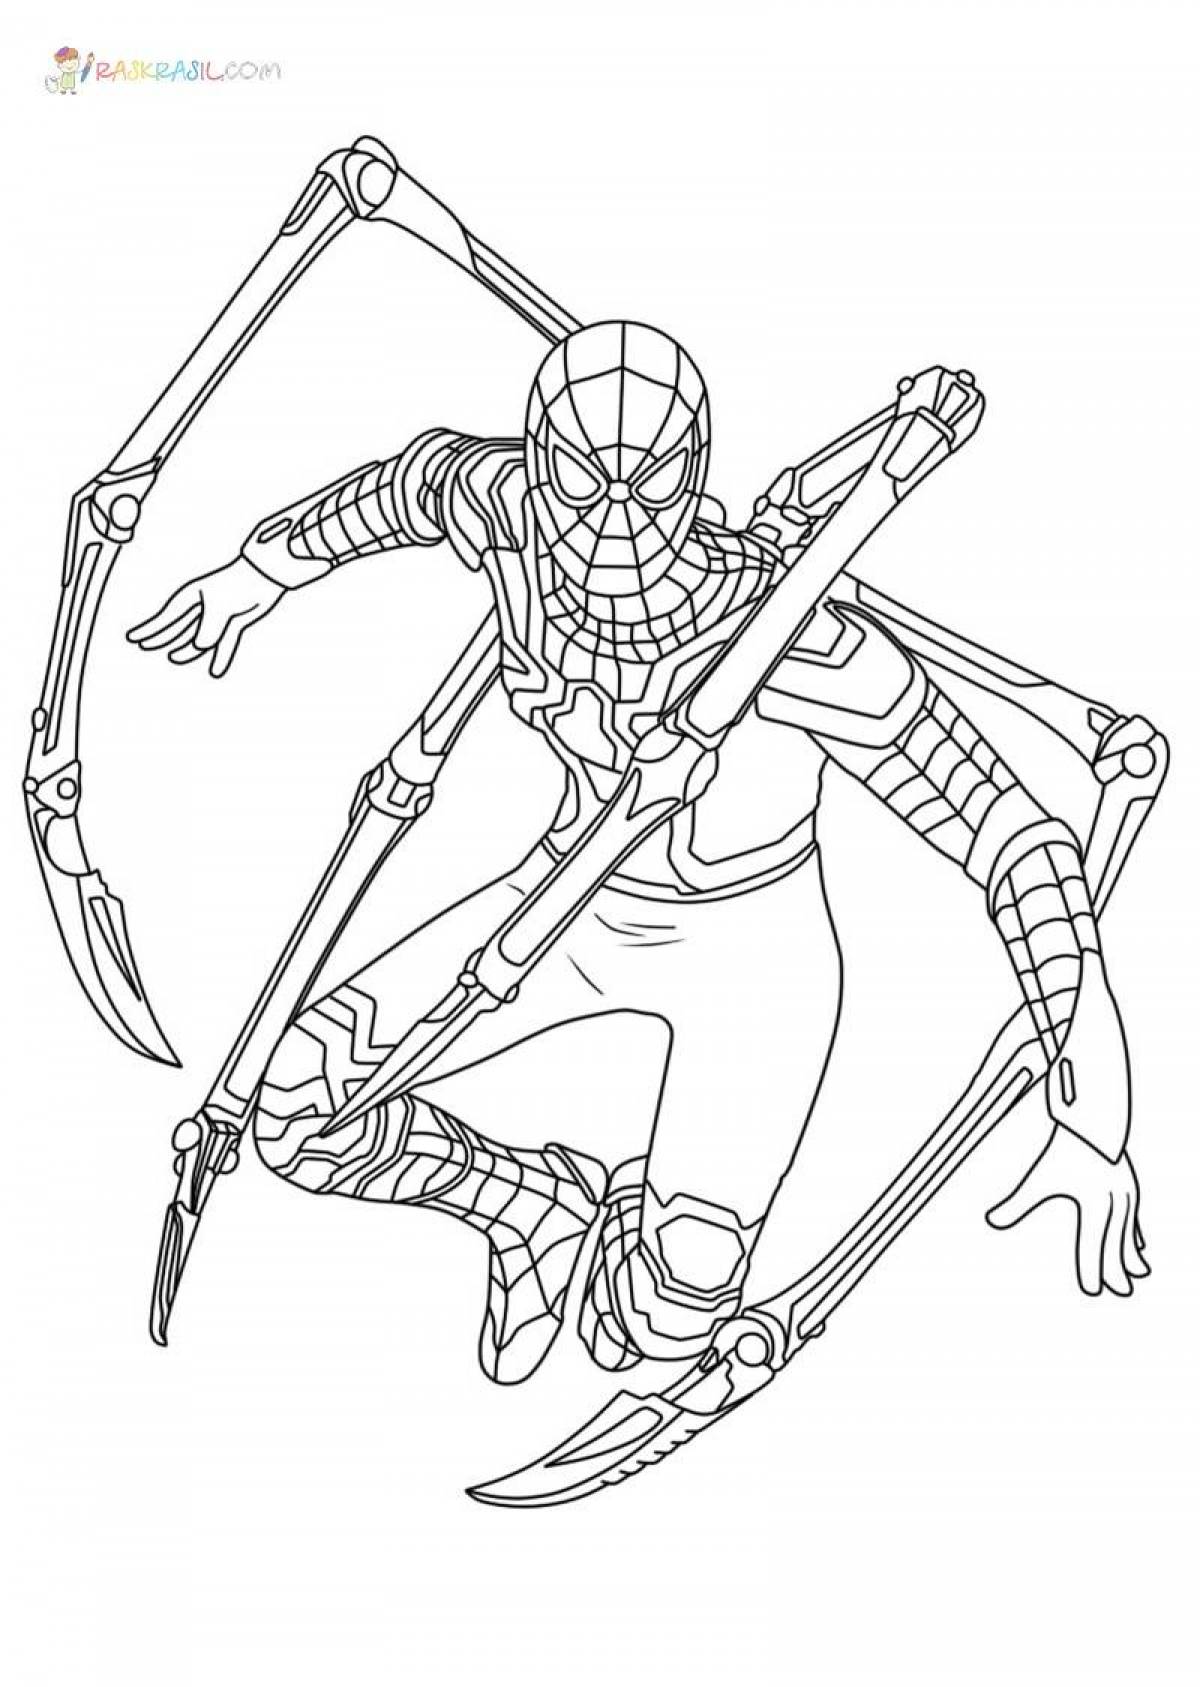 Iron spiderman #1